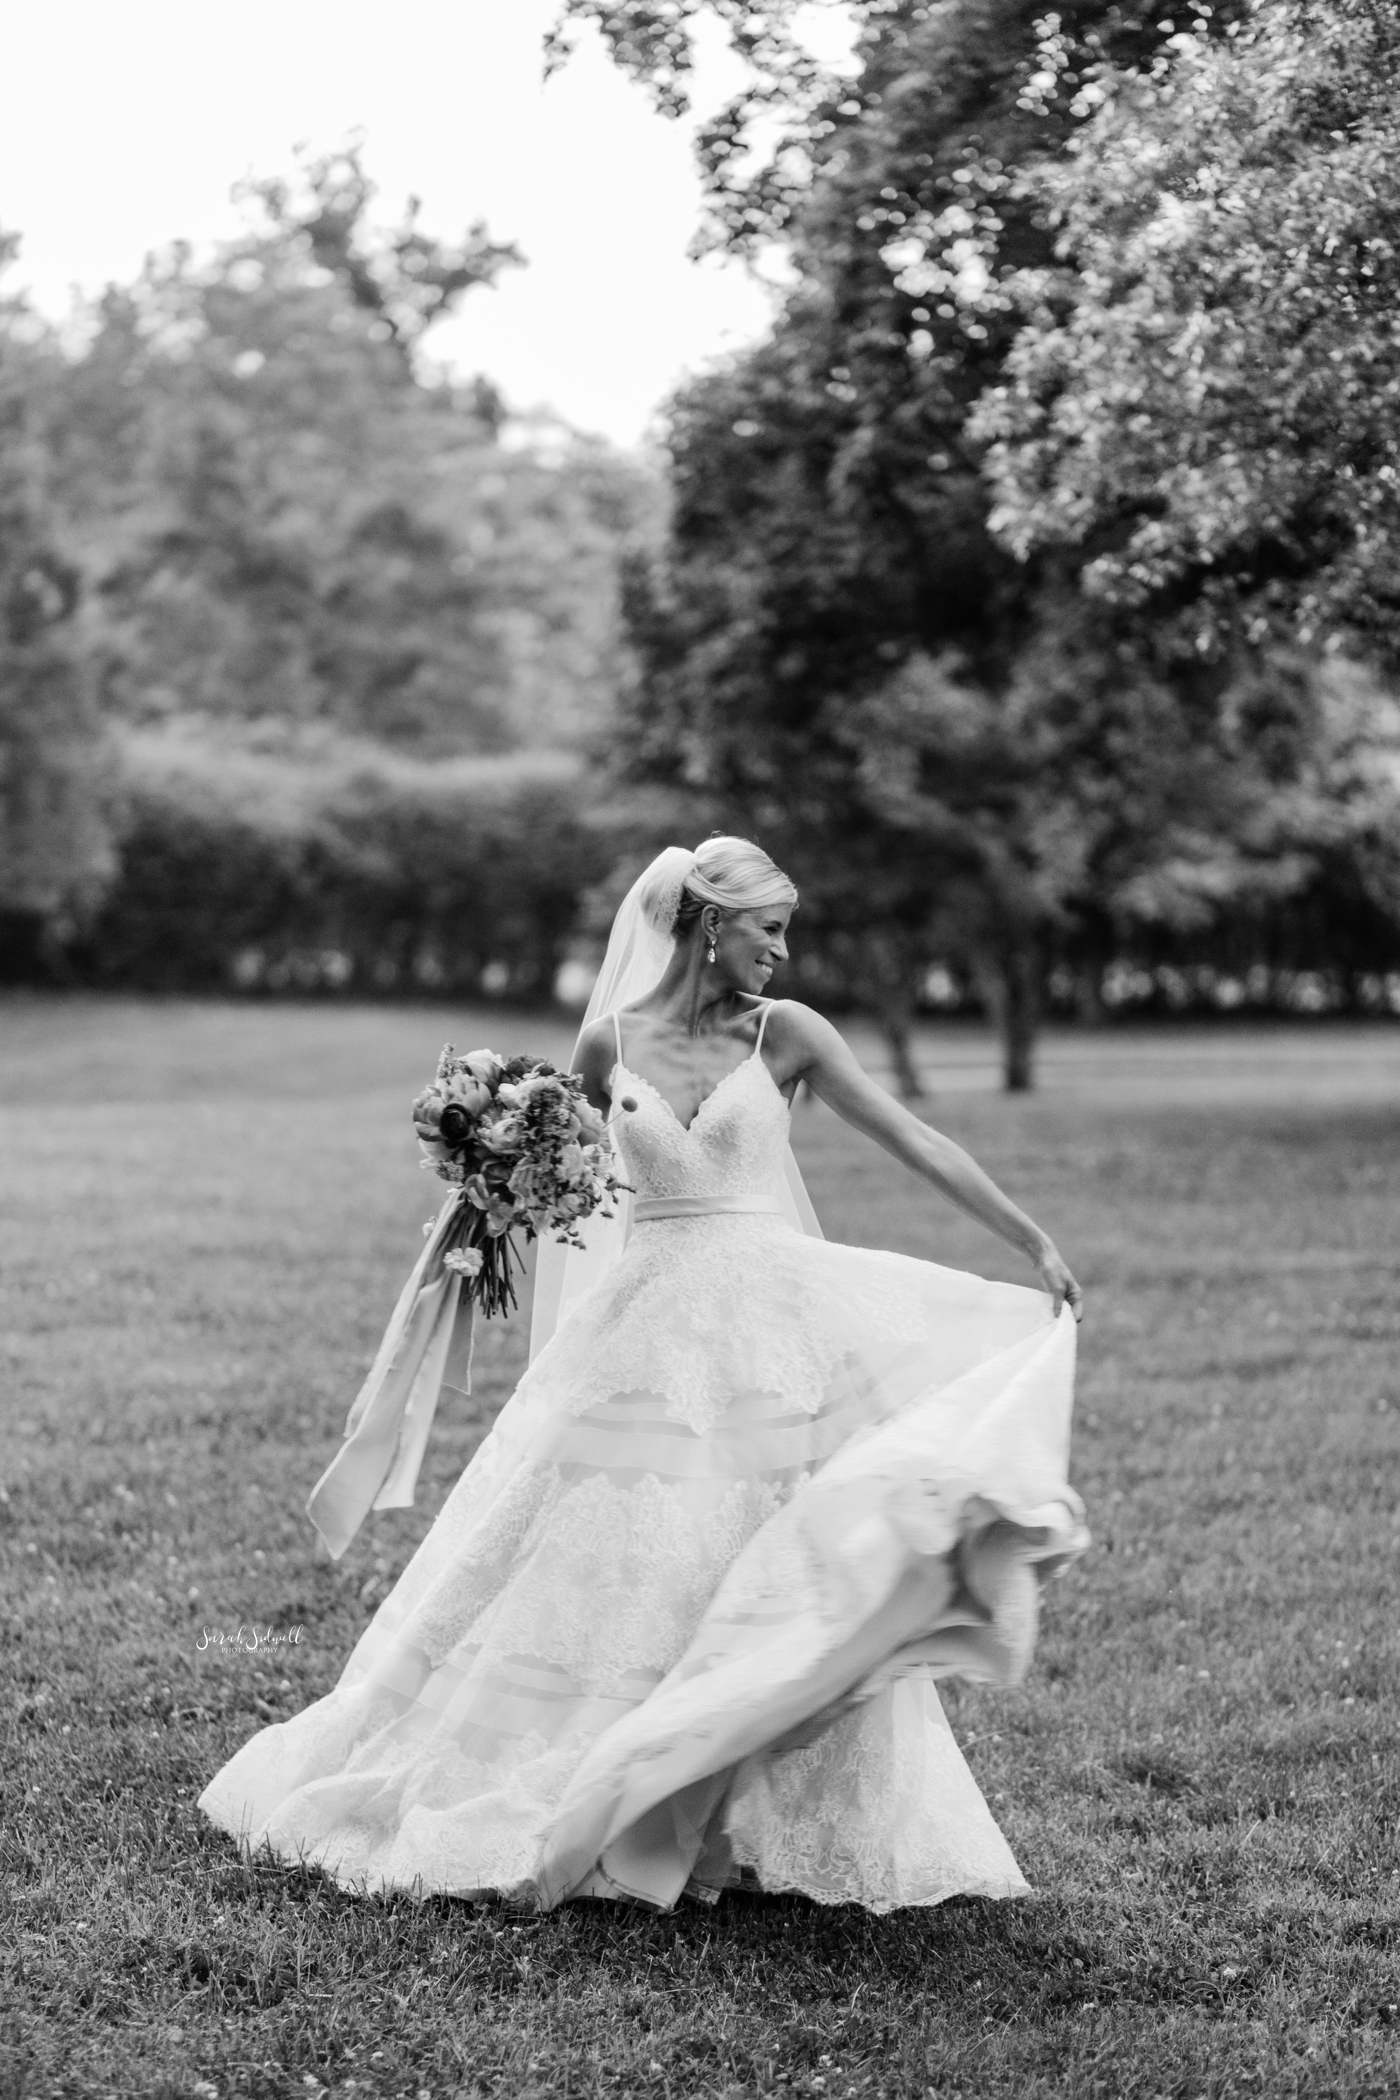 A bride twirls in her wedding dress. 